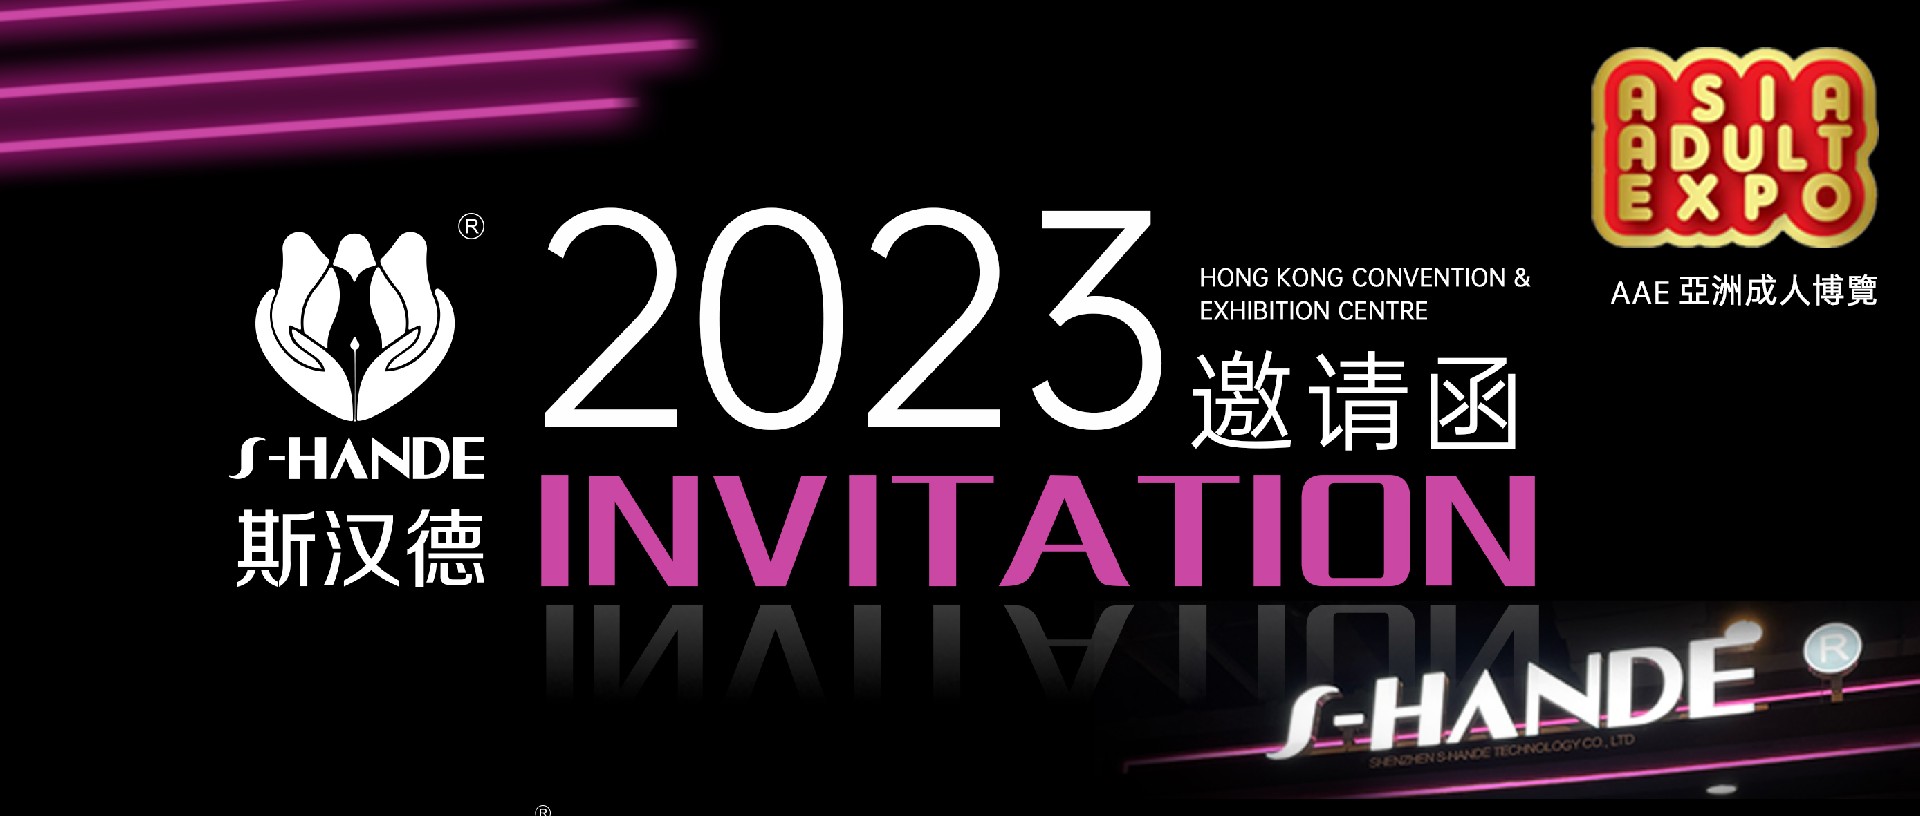 斯汉德邀您共赴2023香港国际情趣生活展